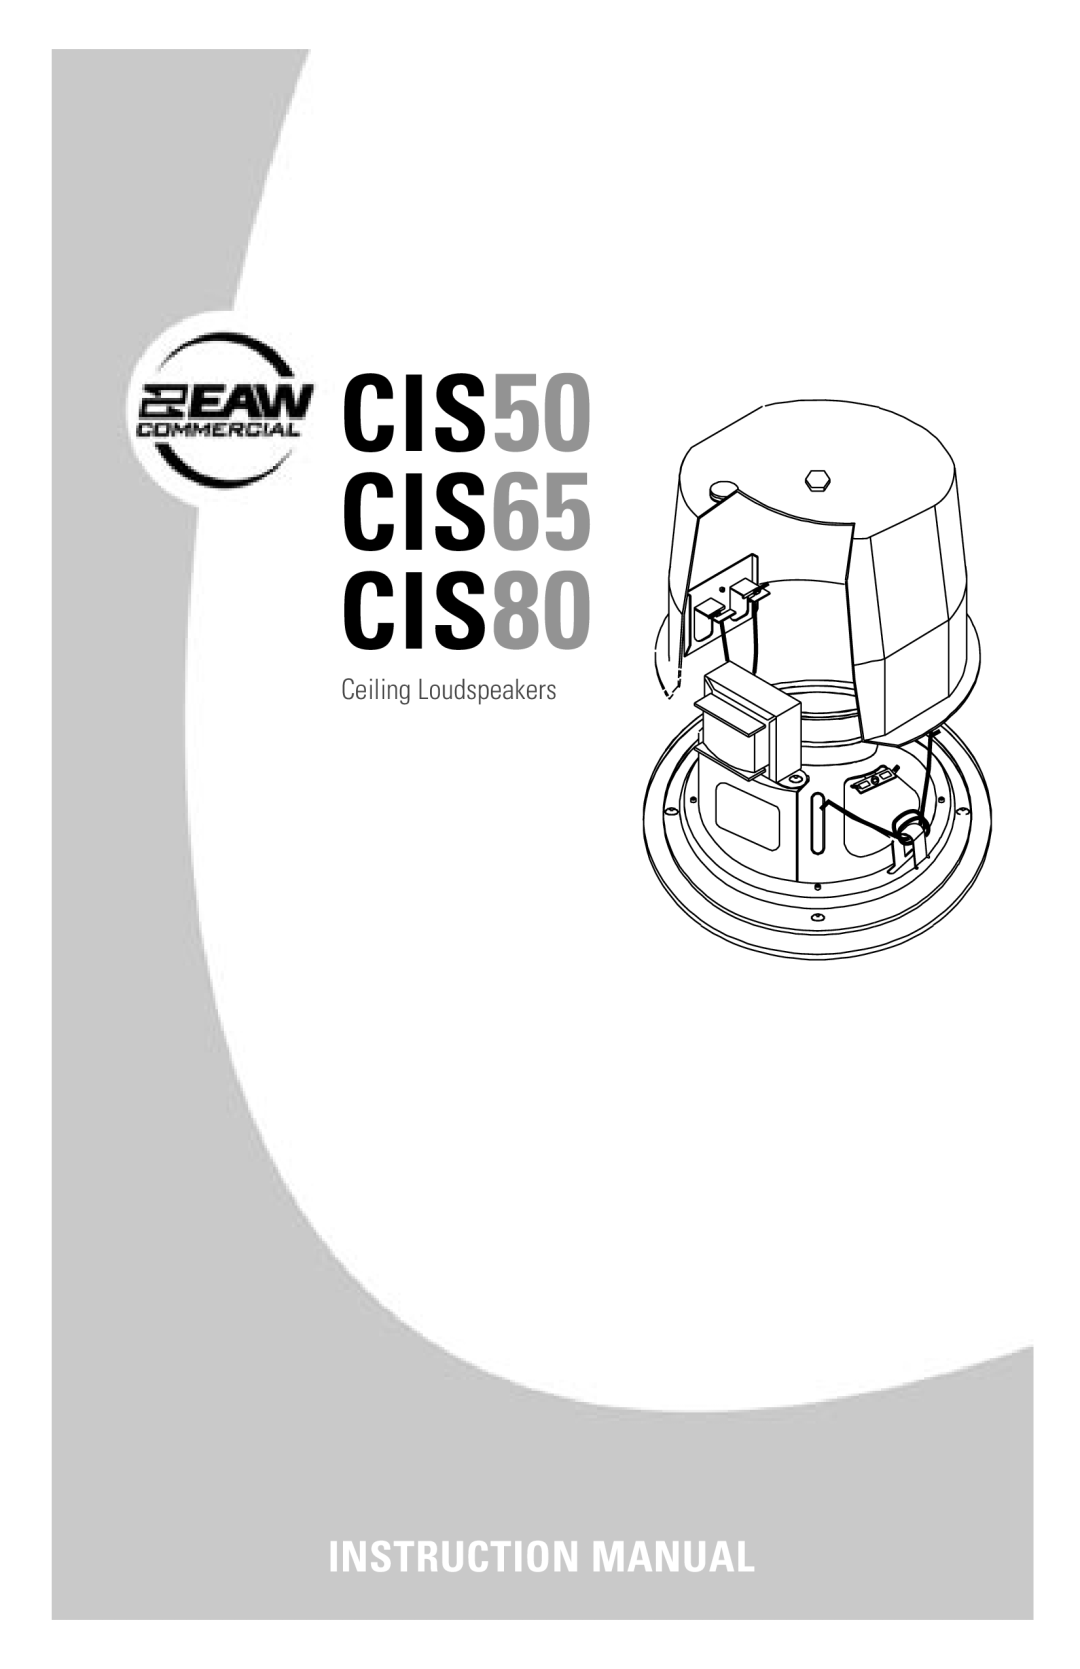 EAW instruction manual CIS50 CIS65 CIS80, Ceiling Loudspeakers 